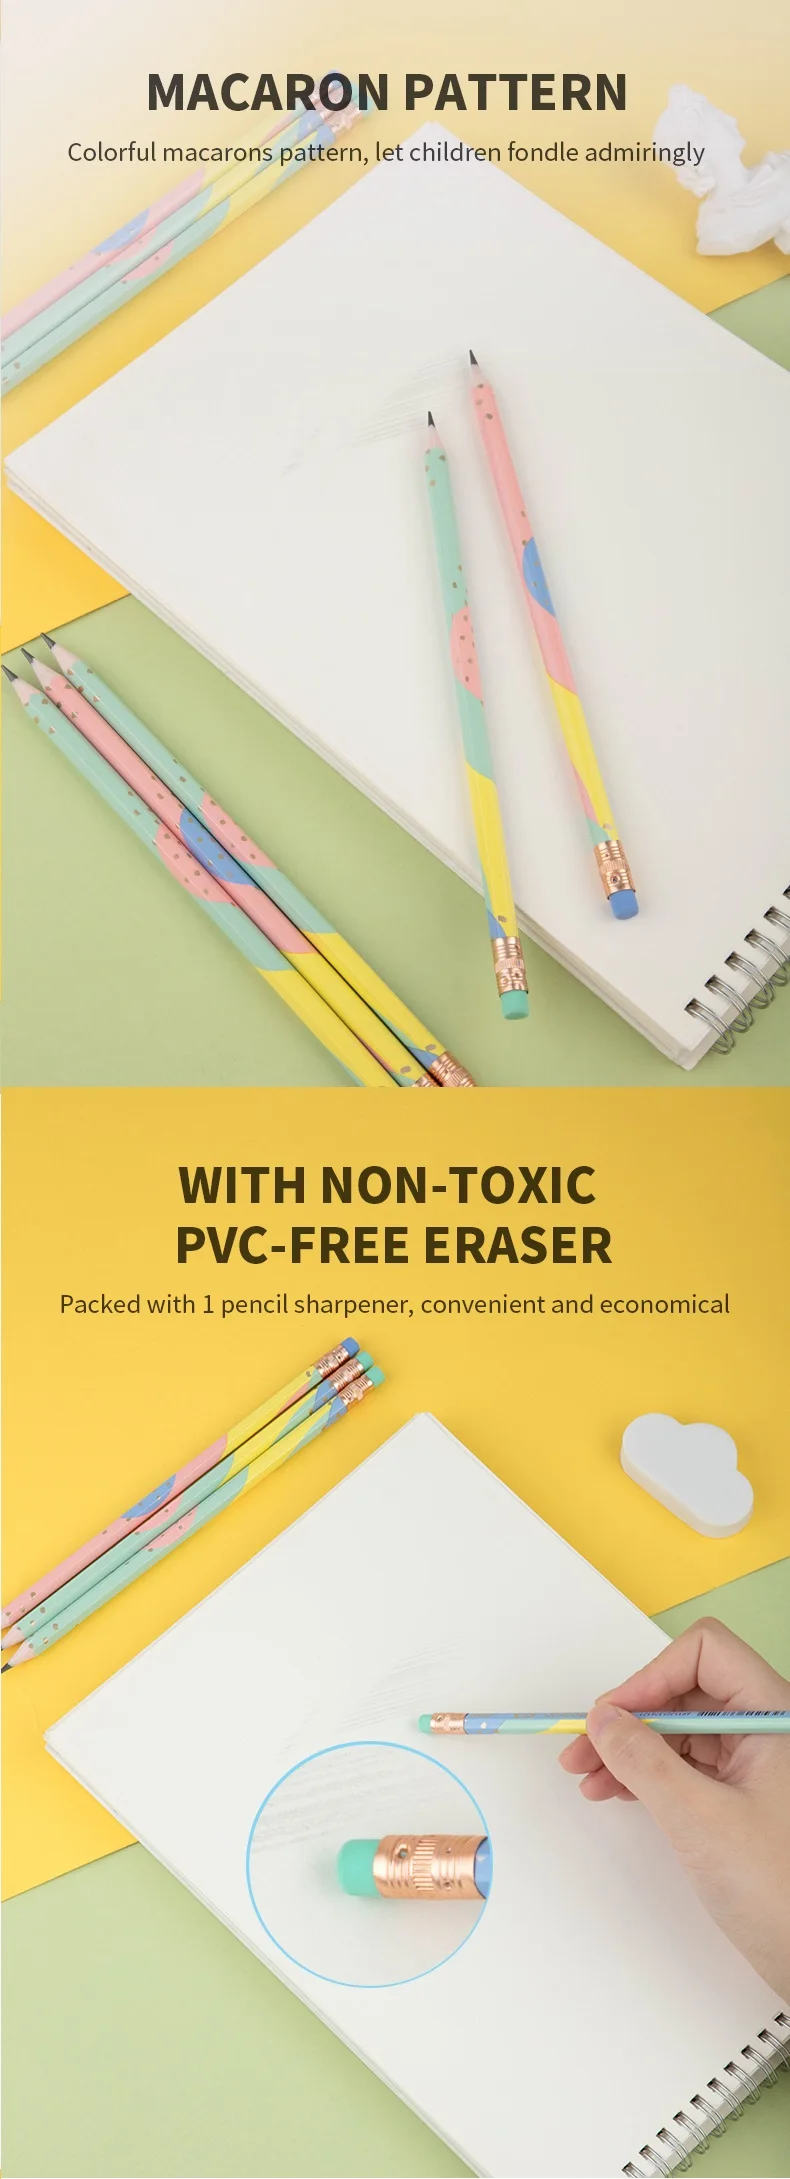 DELI PS карандаши пластиковые для школы 1 коробка(12 шт) HB симпатичный карандаш Экологичные карандаши для детей Канцтовары EU54800 EU54900